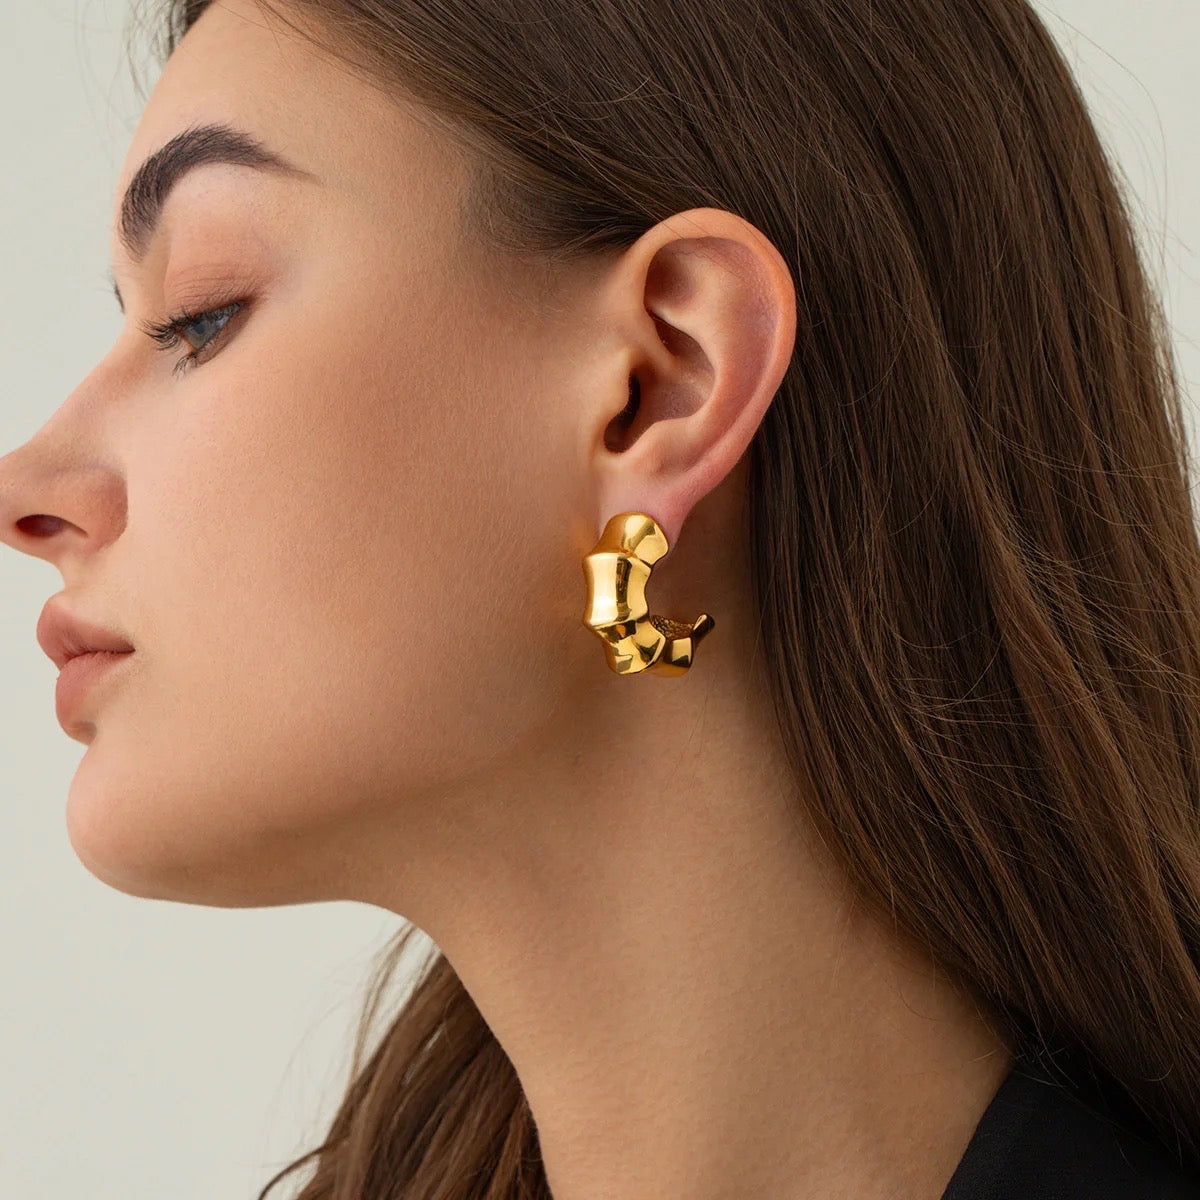 RYTA earrings